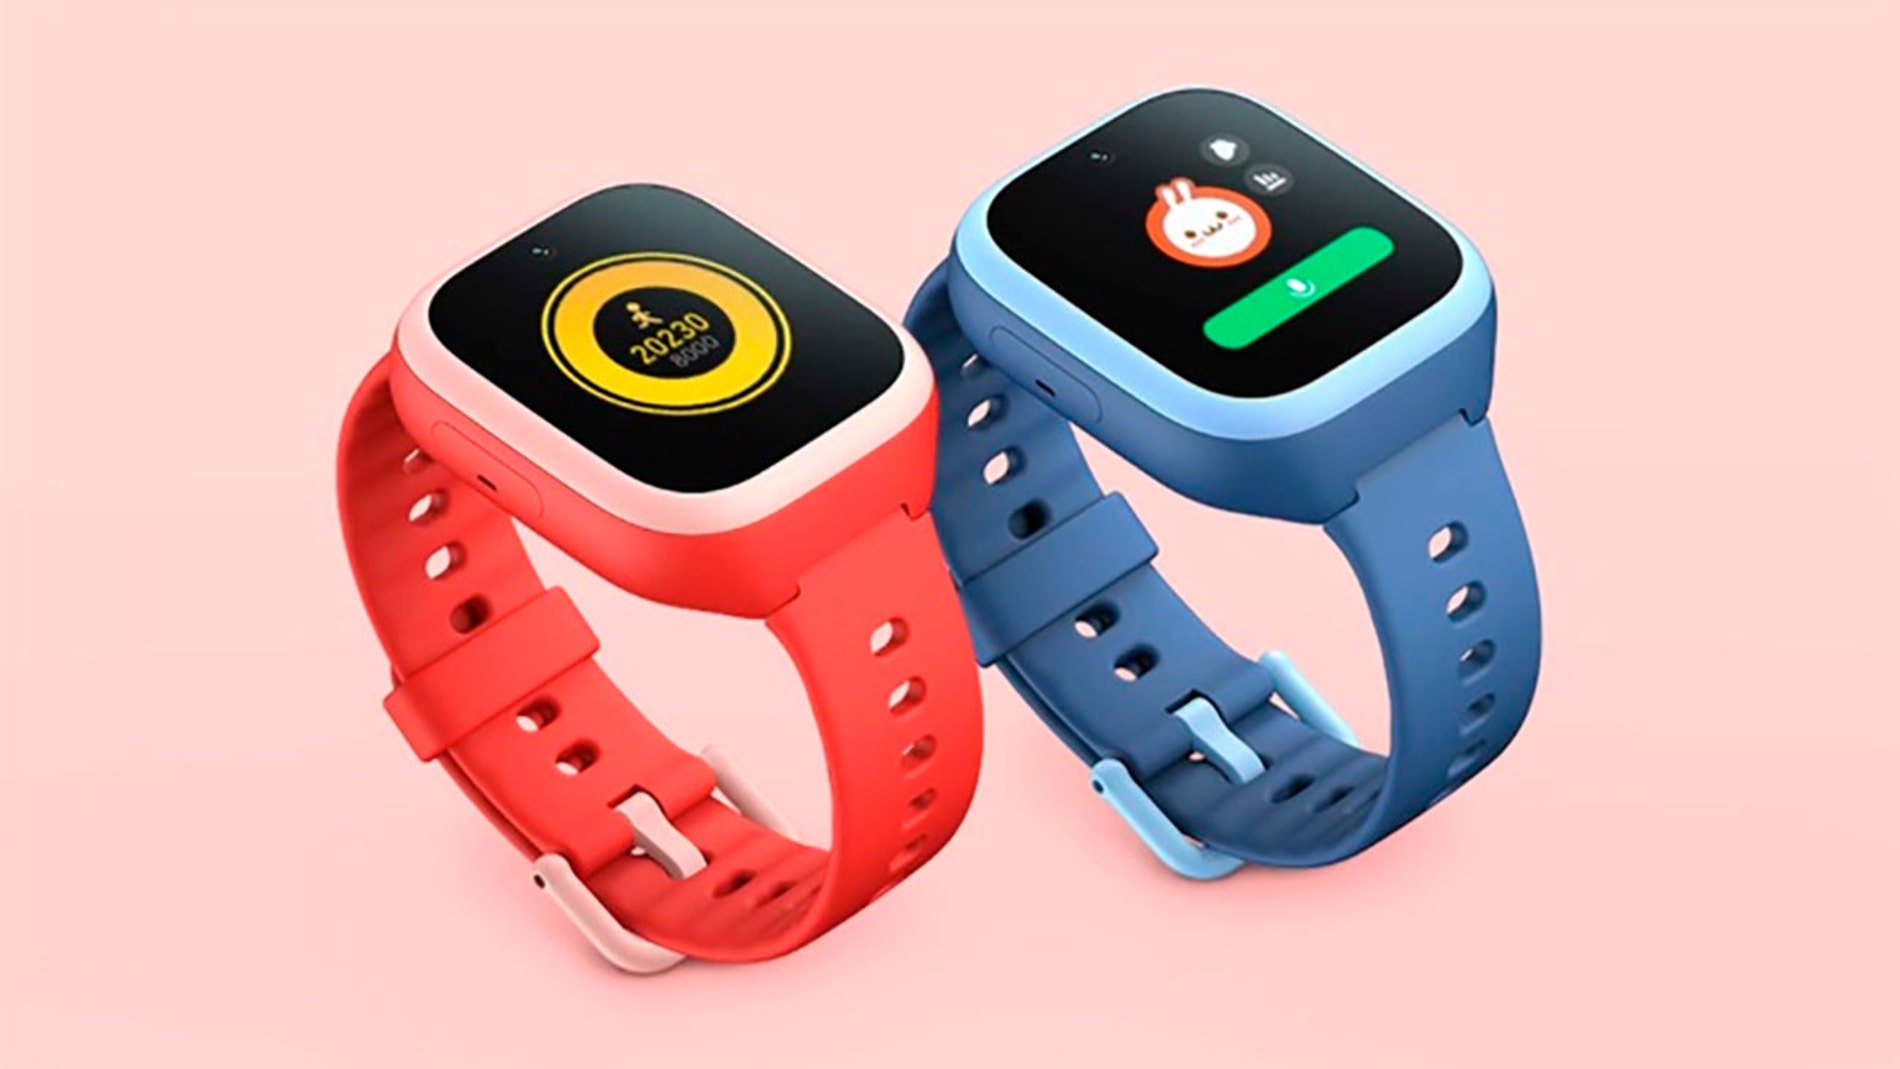 Rodeo tornillo piel Xiaomi lanza un smartwatch para que vigiles a tus pequeños con conectividad  4G